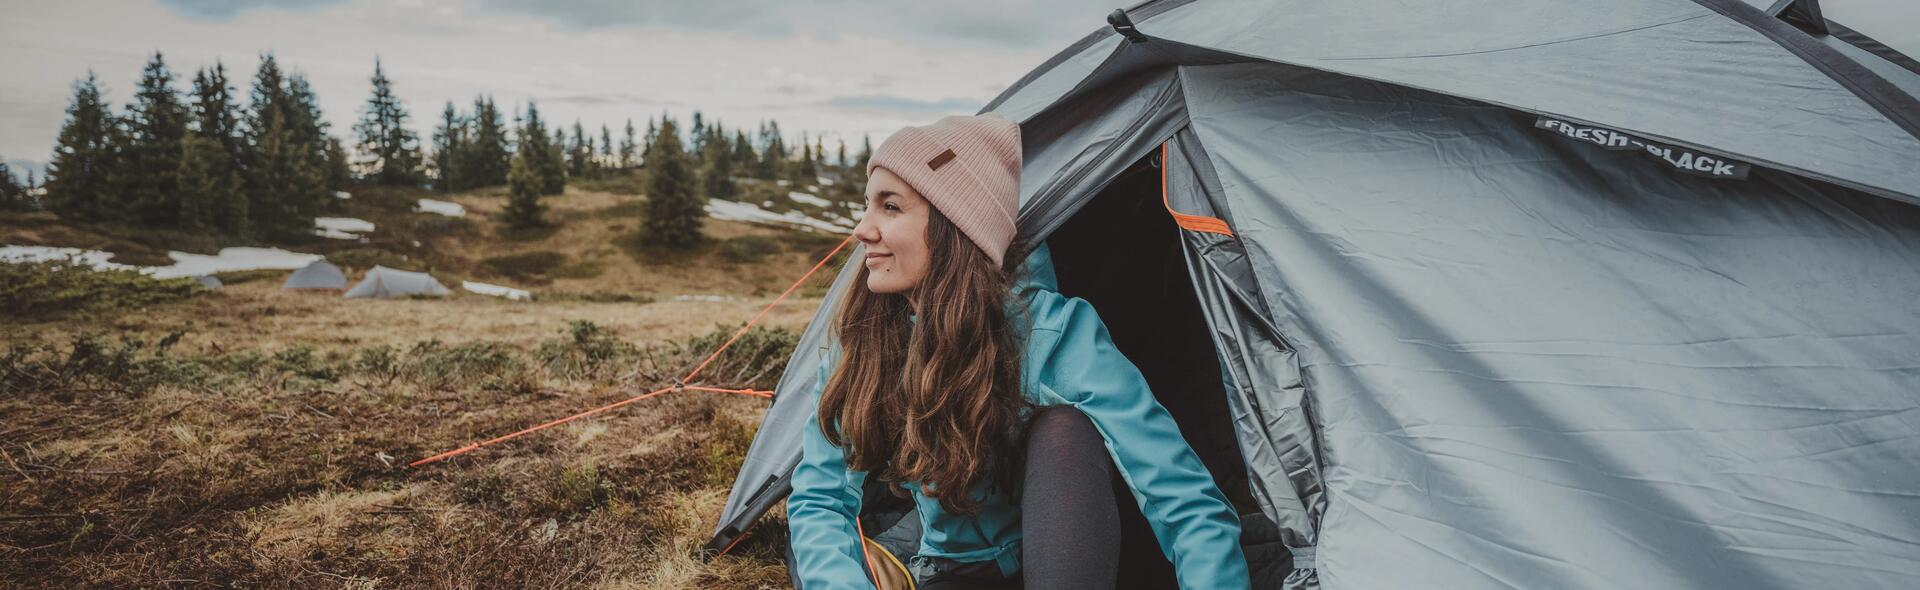 kobieta w kurtce softshell siedząca przy namiocie w górach